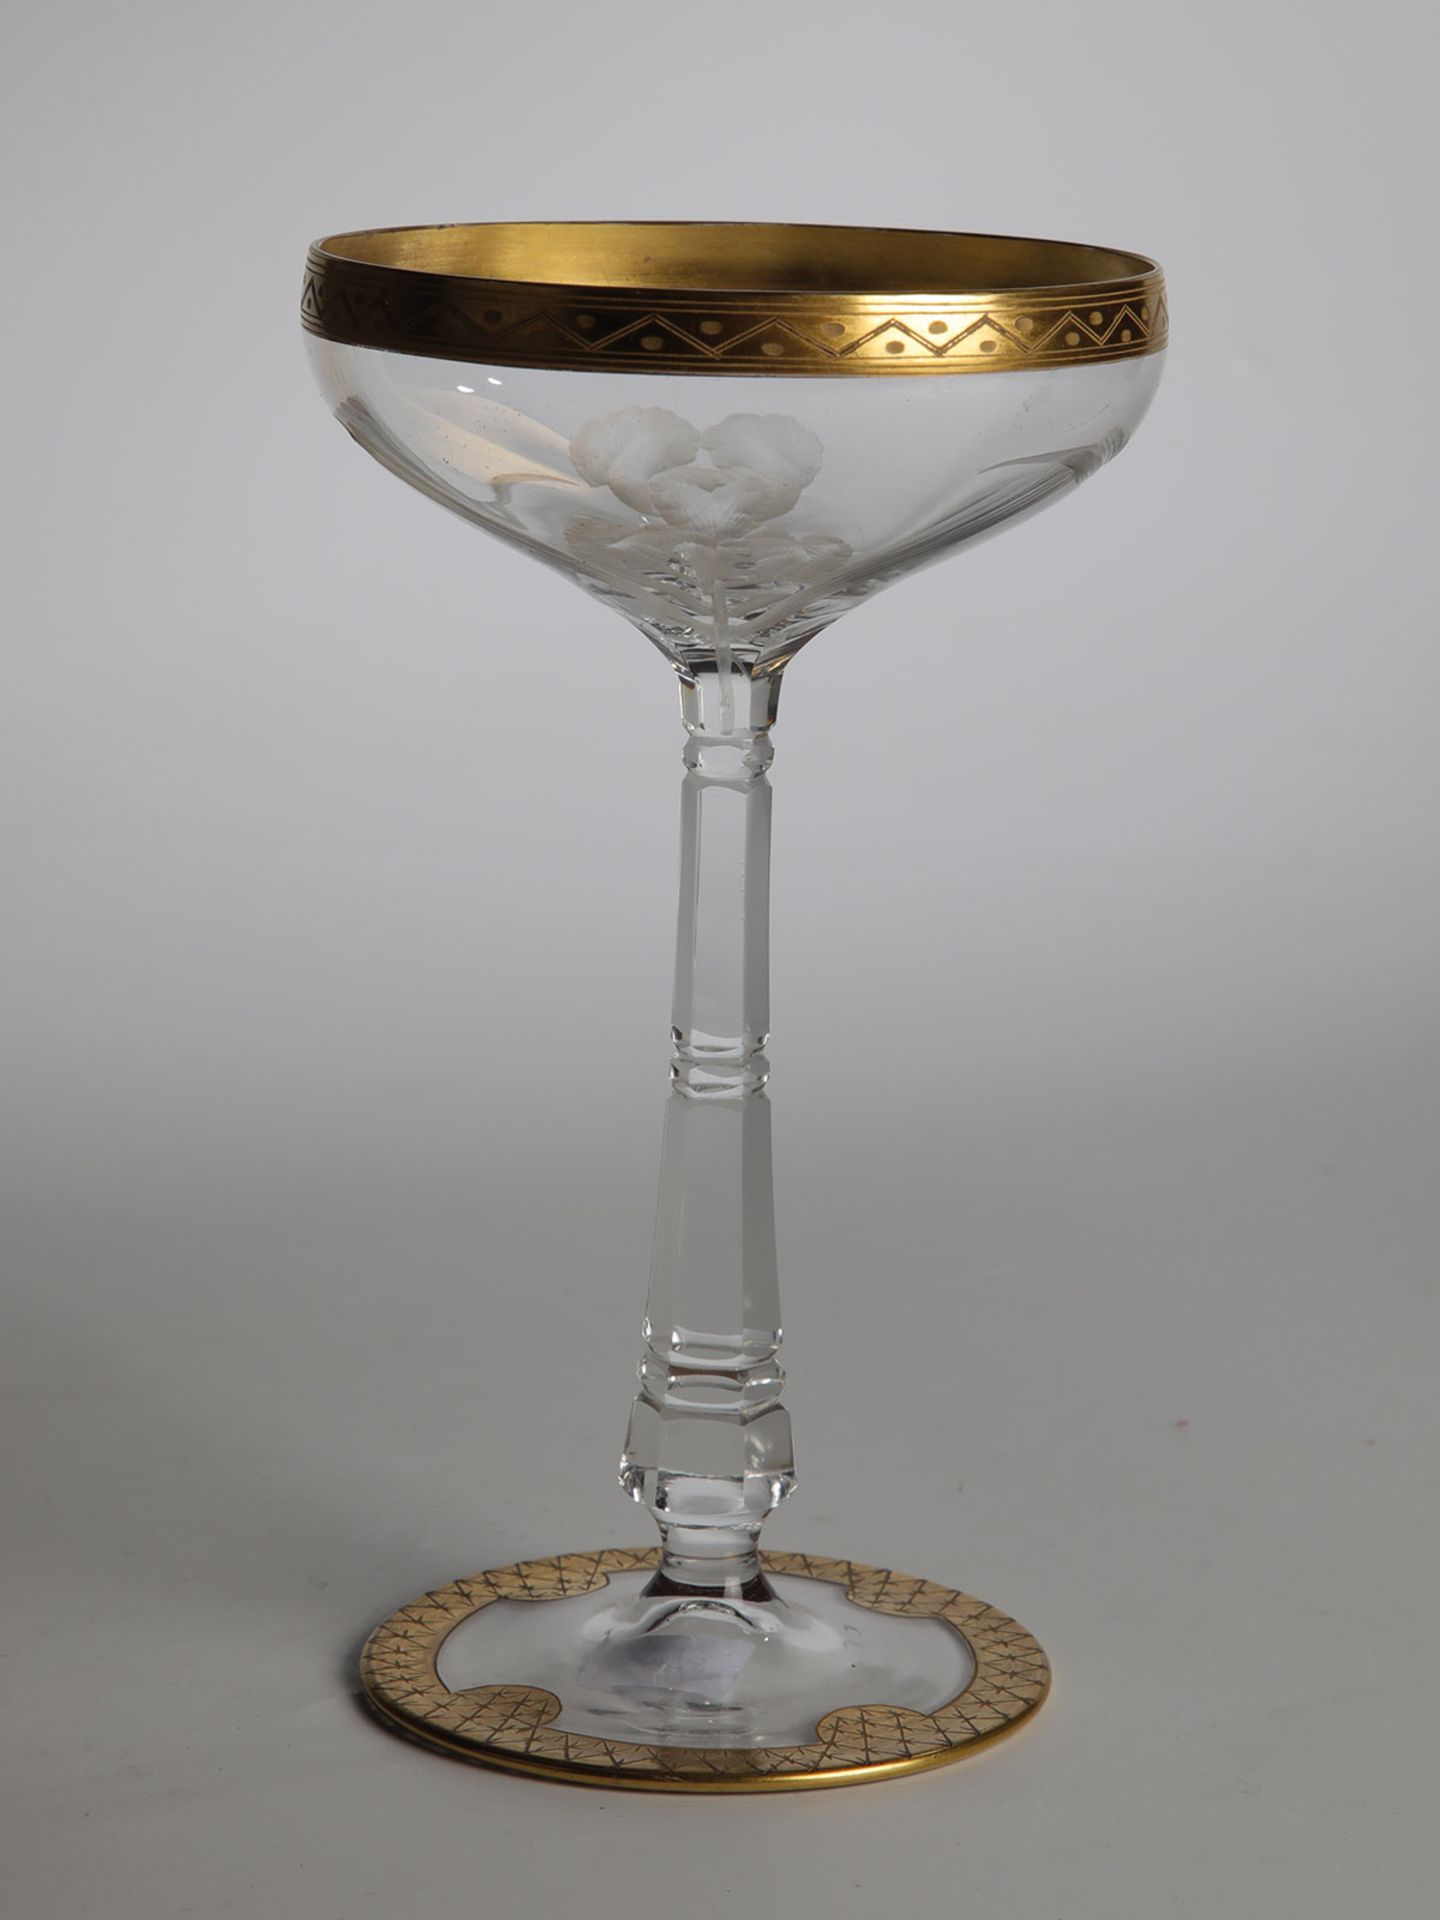 Sektschale "Iris"Moser, Karlsbad, 1902 Farbloses Glas mit Schliff, Gravur und Goldbemalung. Die